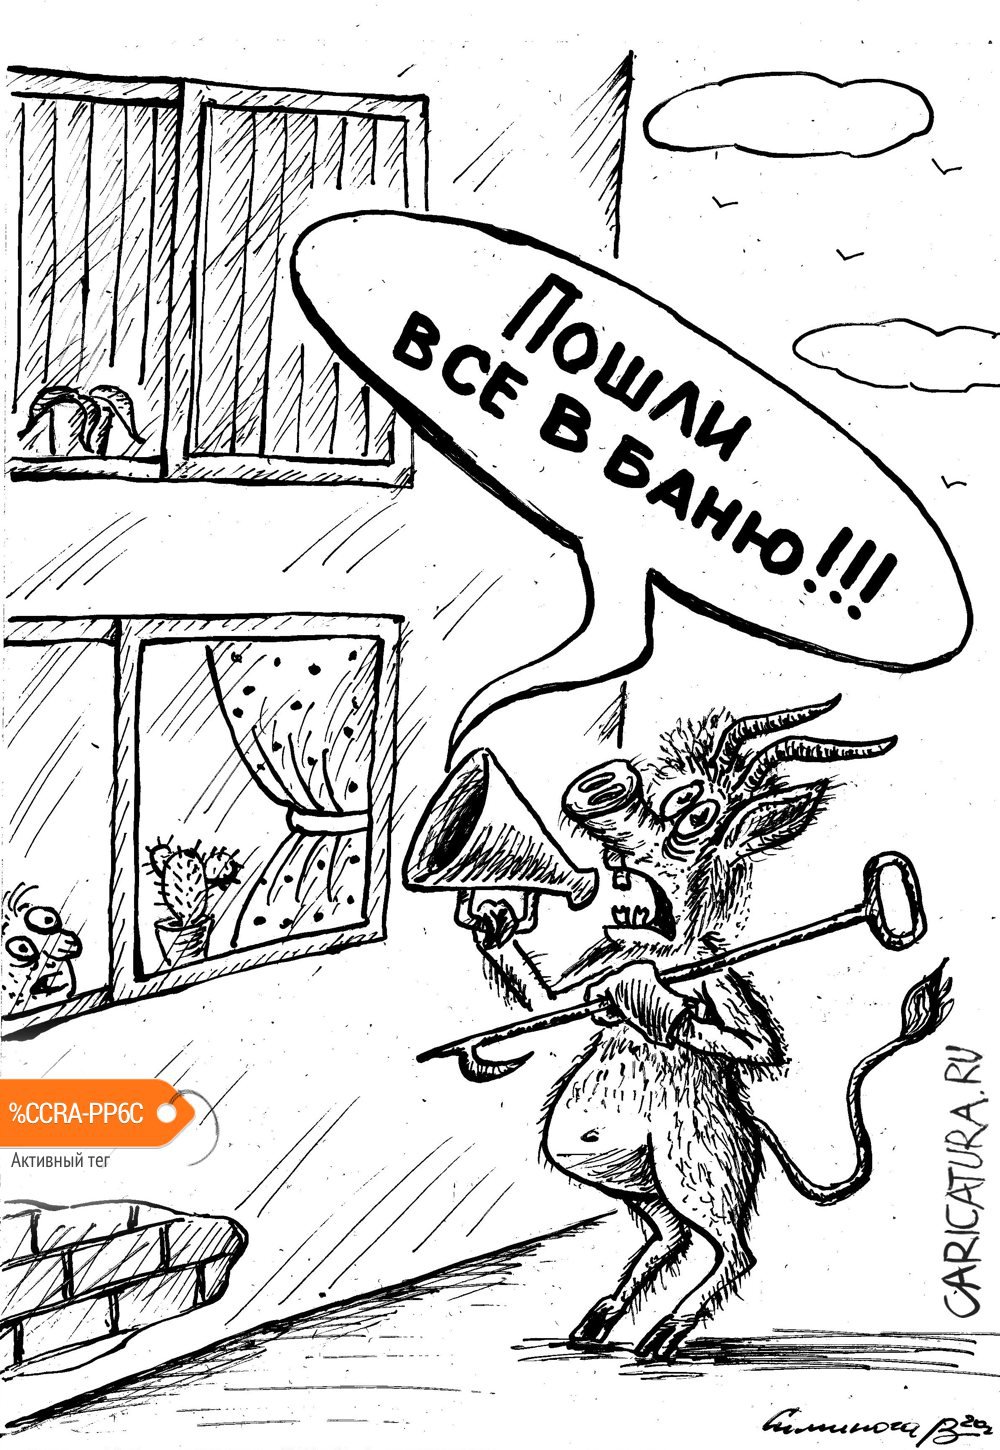 Карикатура "Посыл", Vadim Siminoga